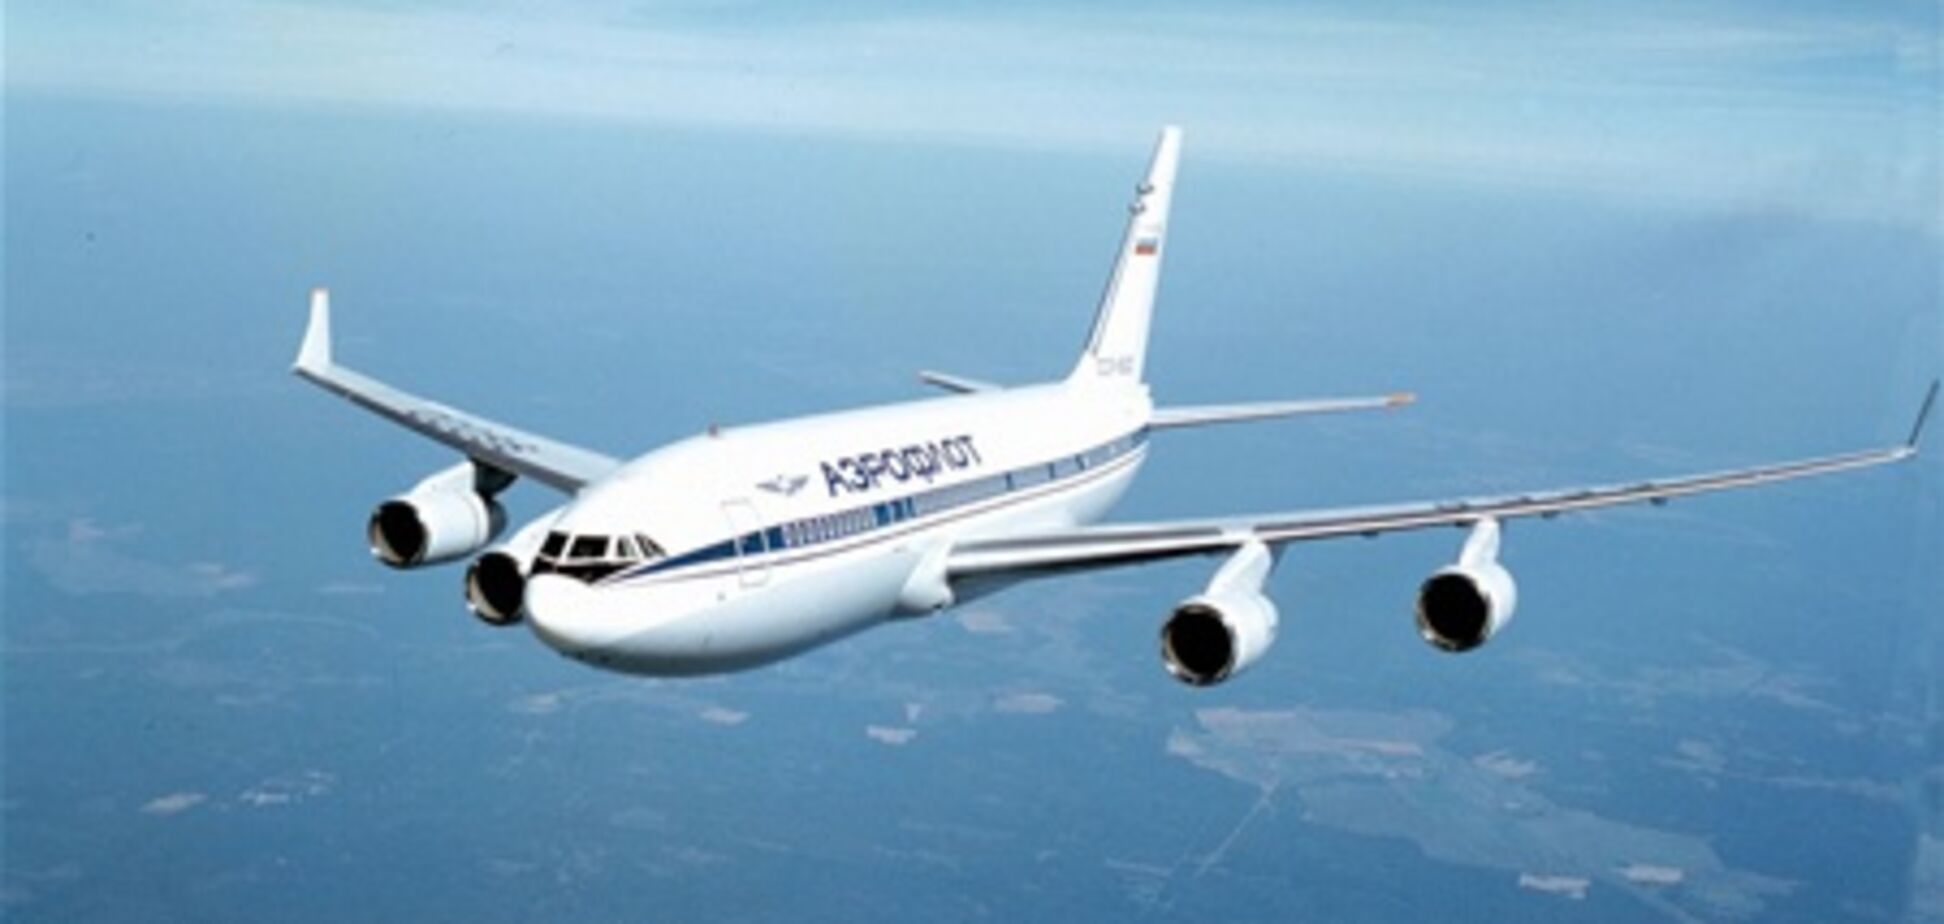 Авиабилеты на рейс Киев – Москва за 50 евро